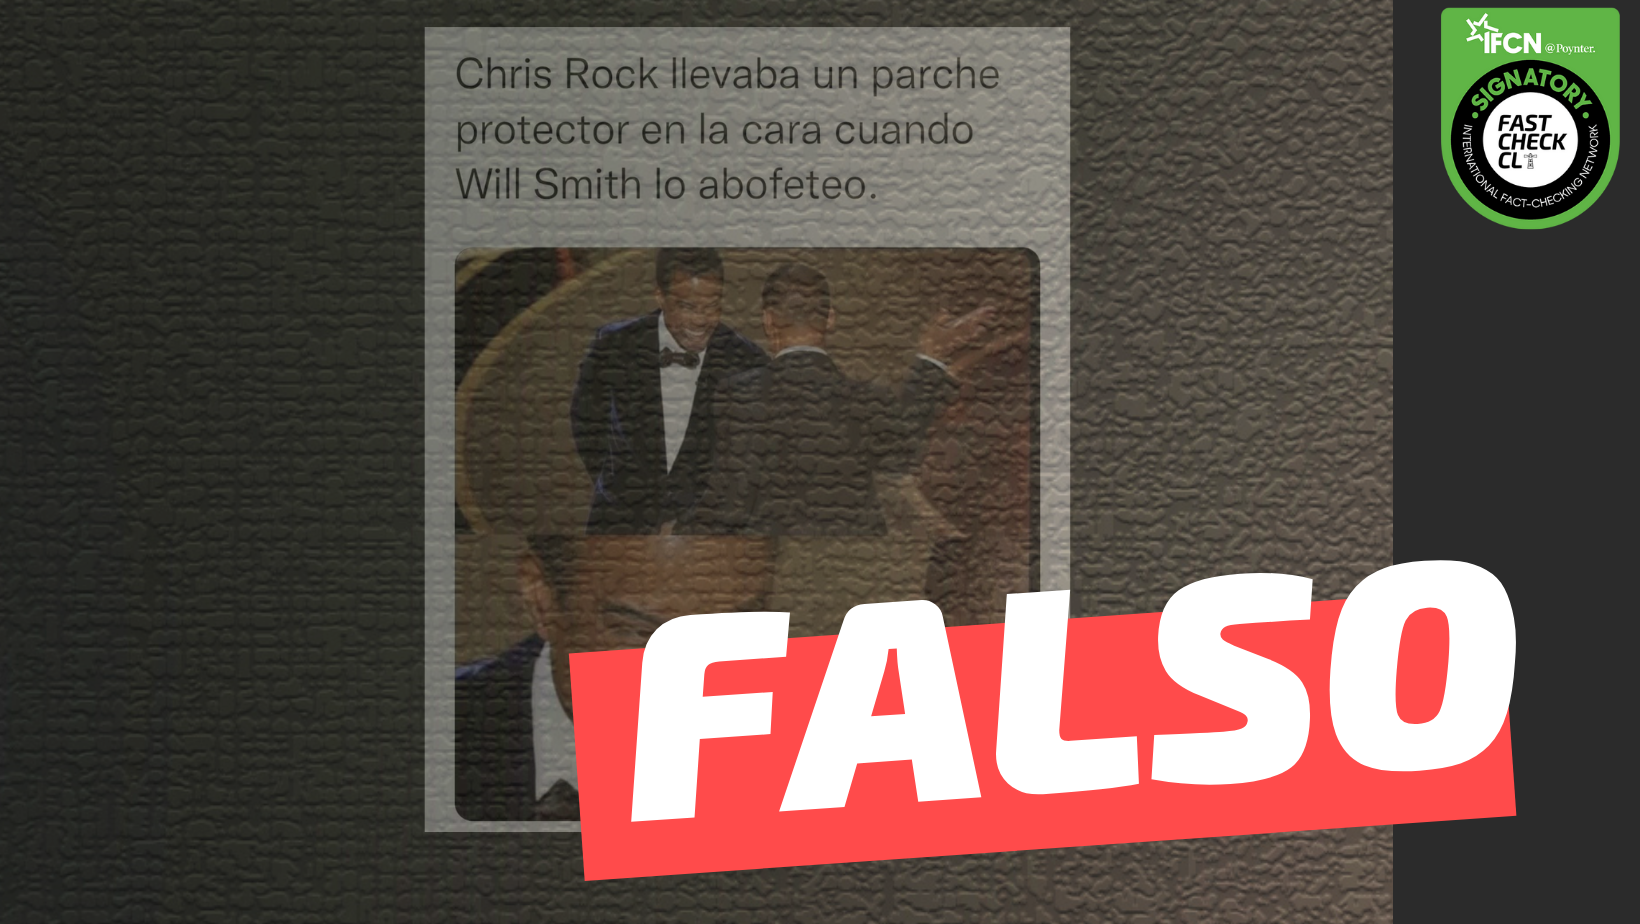 You are currently viewing (Imagen) “Chris Rock llevaba un parche protector cuando Will Smith lo abofeteó”: #Falso